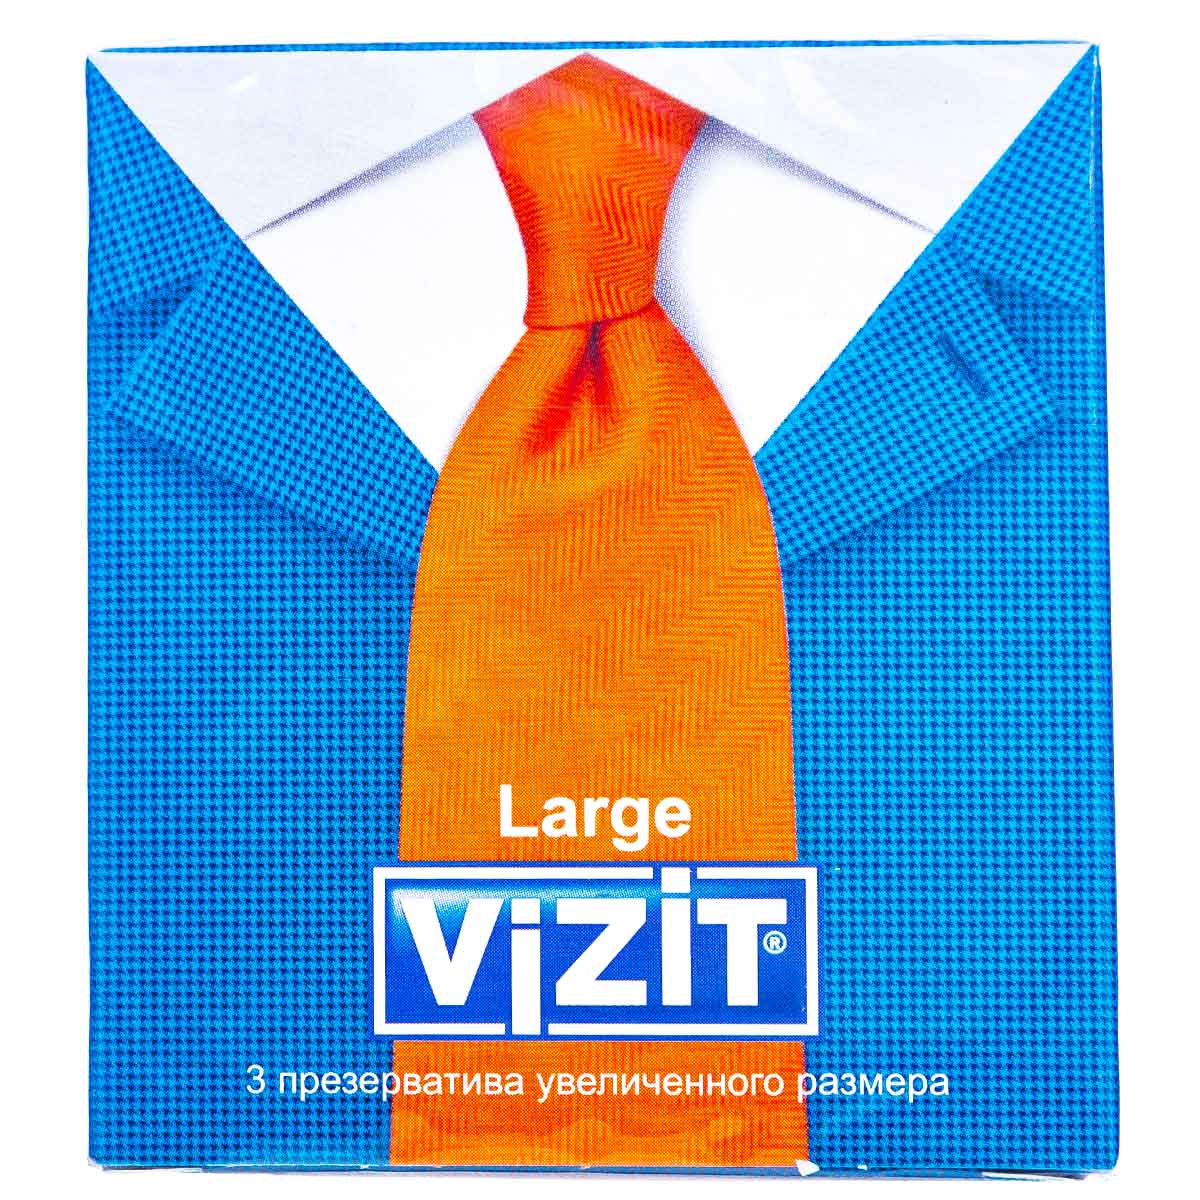 Визит Презервативы увеличенного размера,3 шт (Vizit, Visit презервативы) фото 0